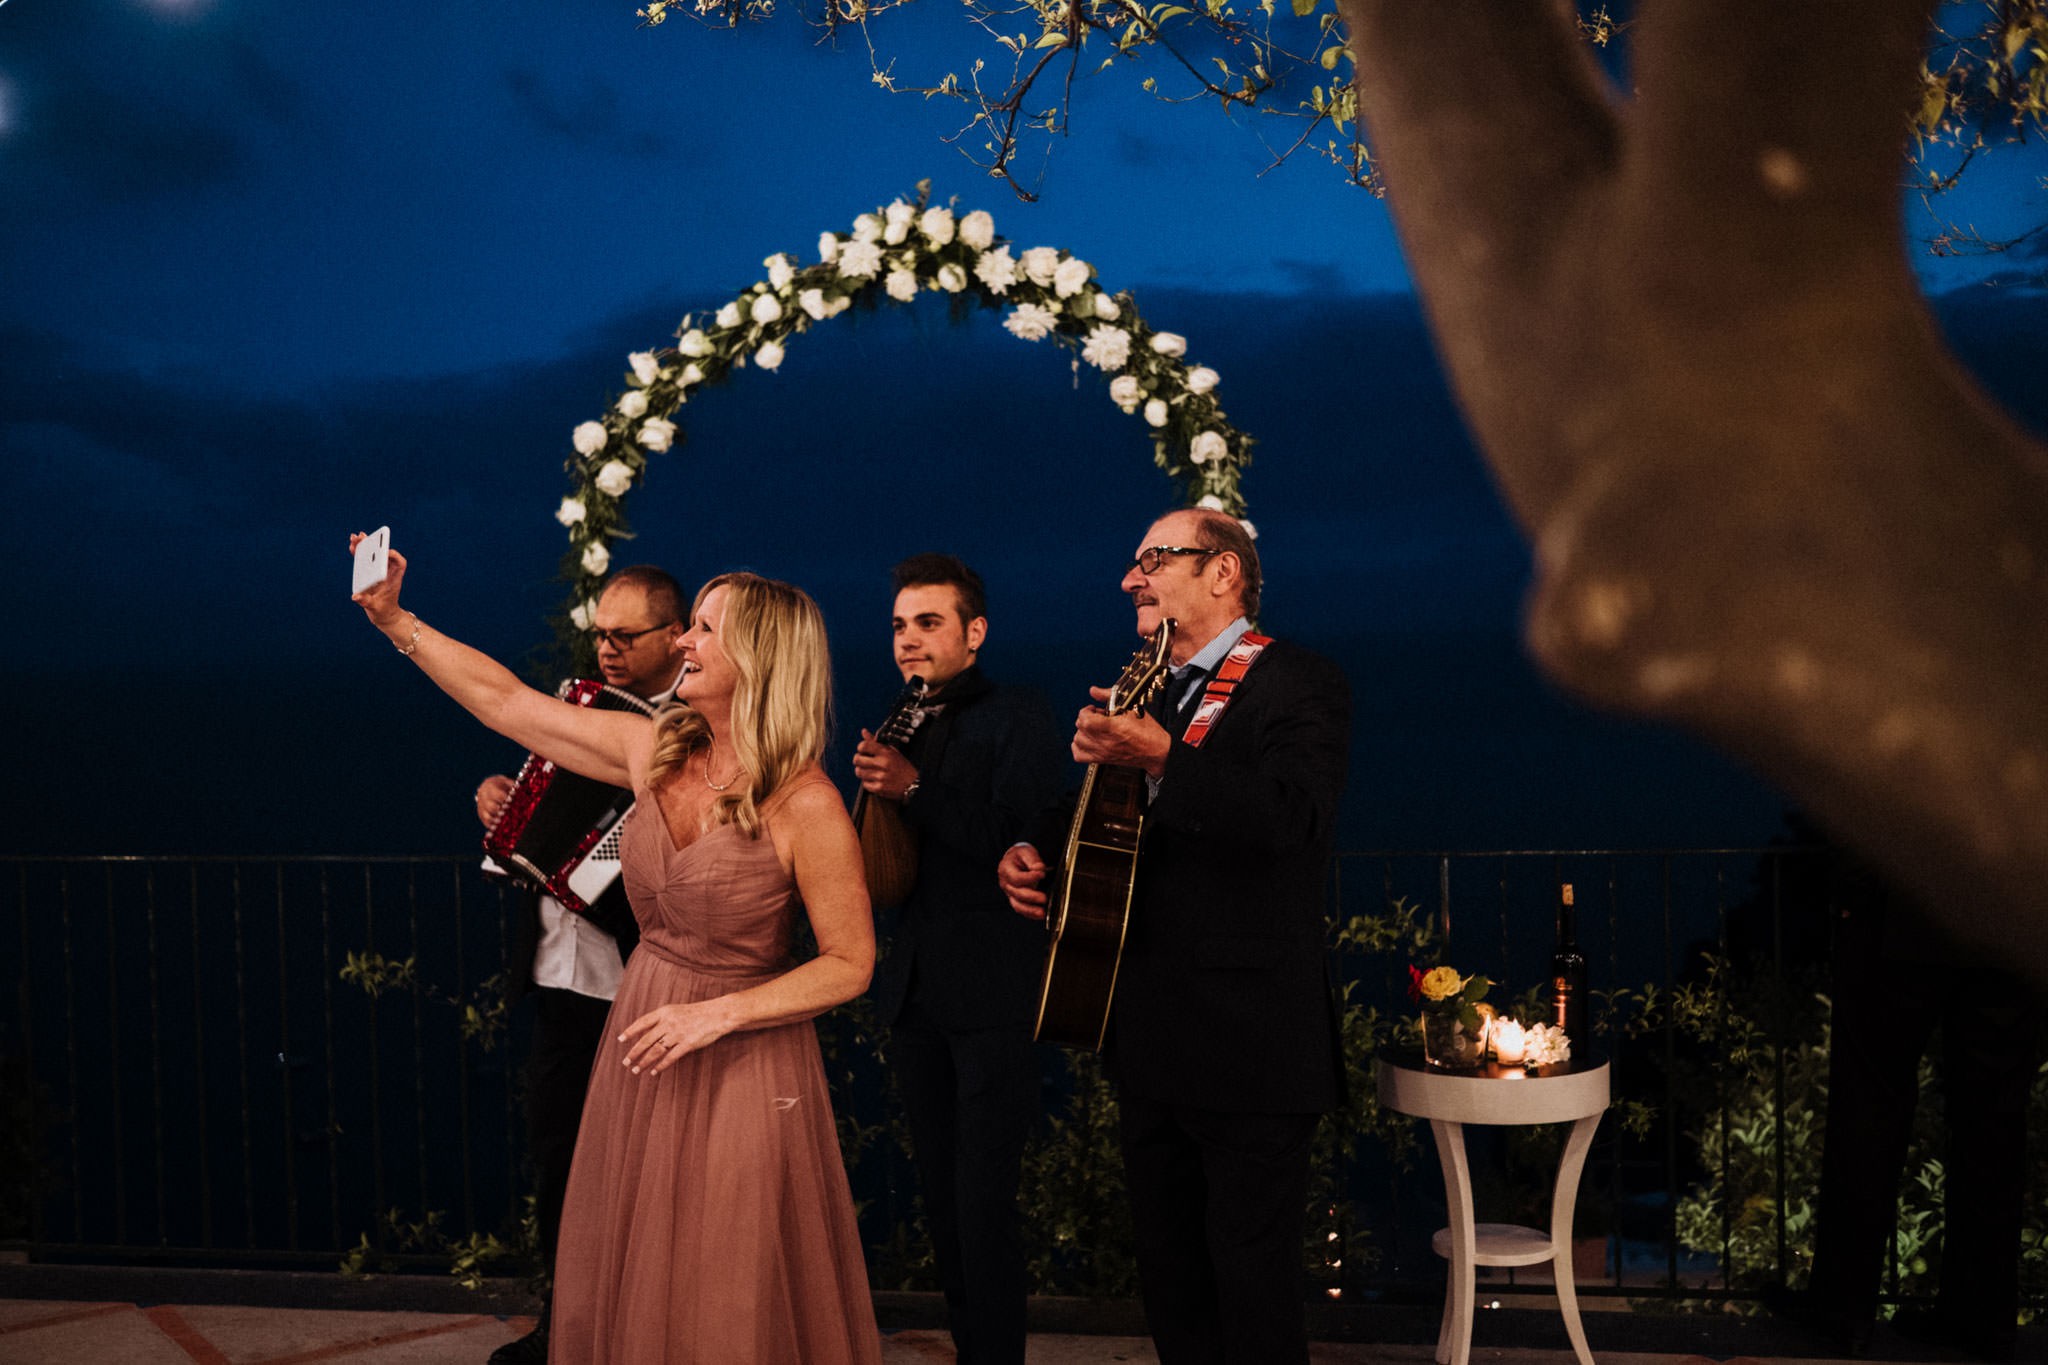 Reception - Wedding in Positano